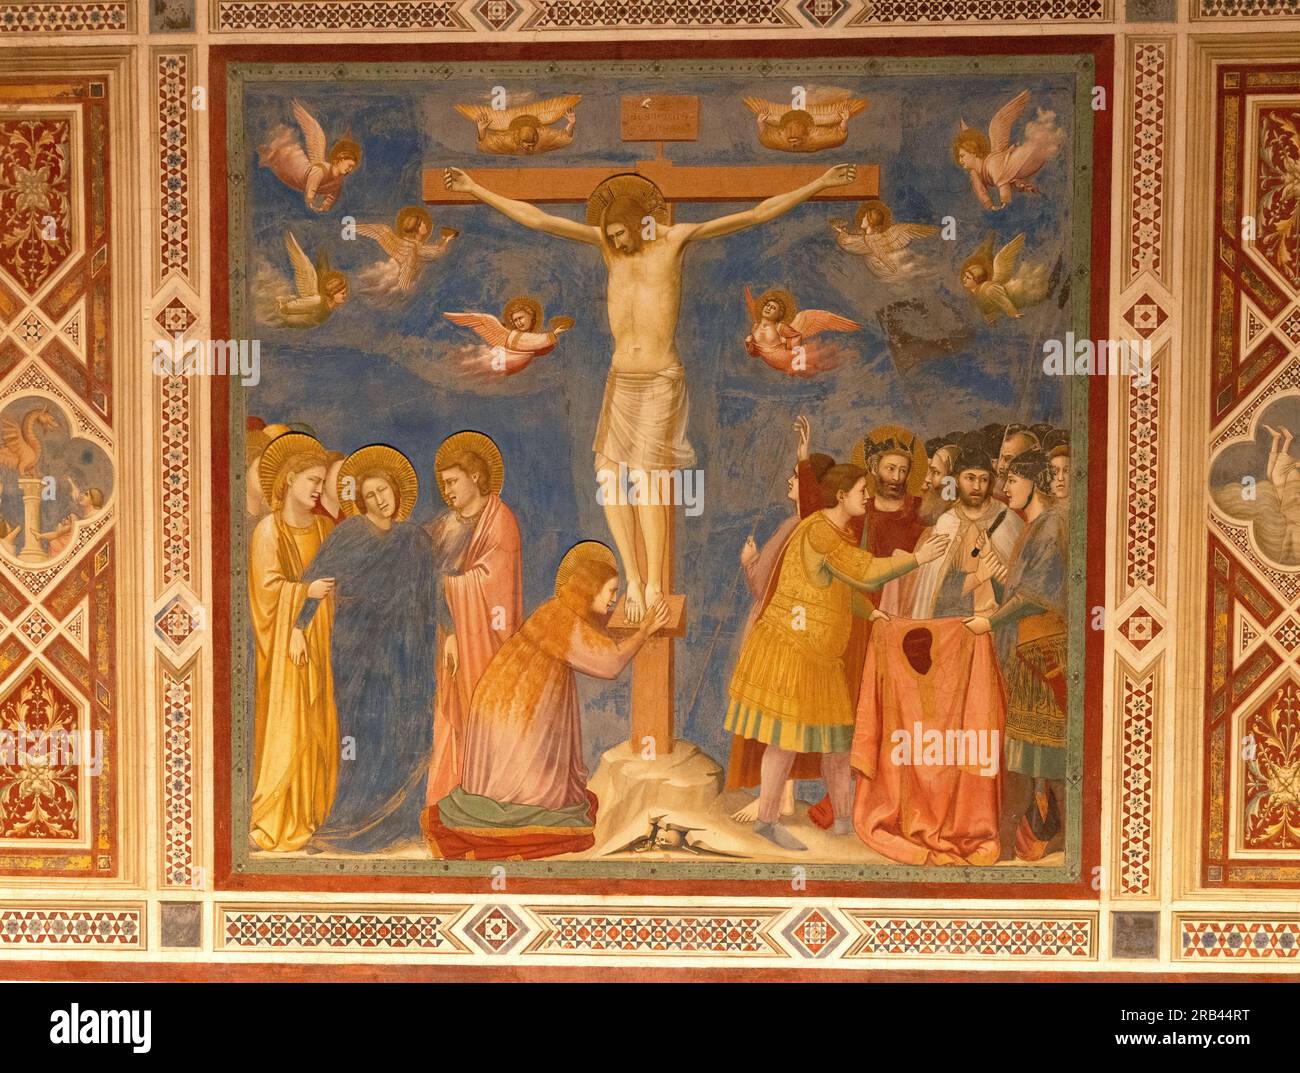 Fresques de Giotto, la chapelle Scrovegni, Padoue Italie - peintures de la Renaissance italienne de la vie du Christ ; ici, 'Crucifixion du Christ' ; - Histoire de l'art. Banque D'Images